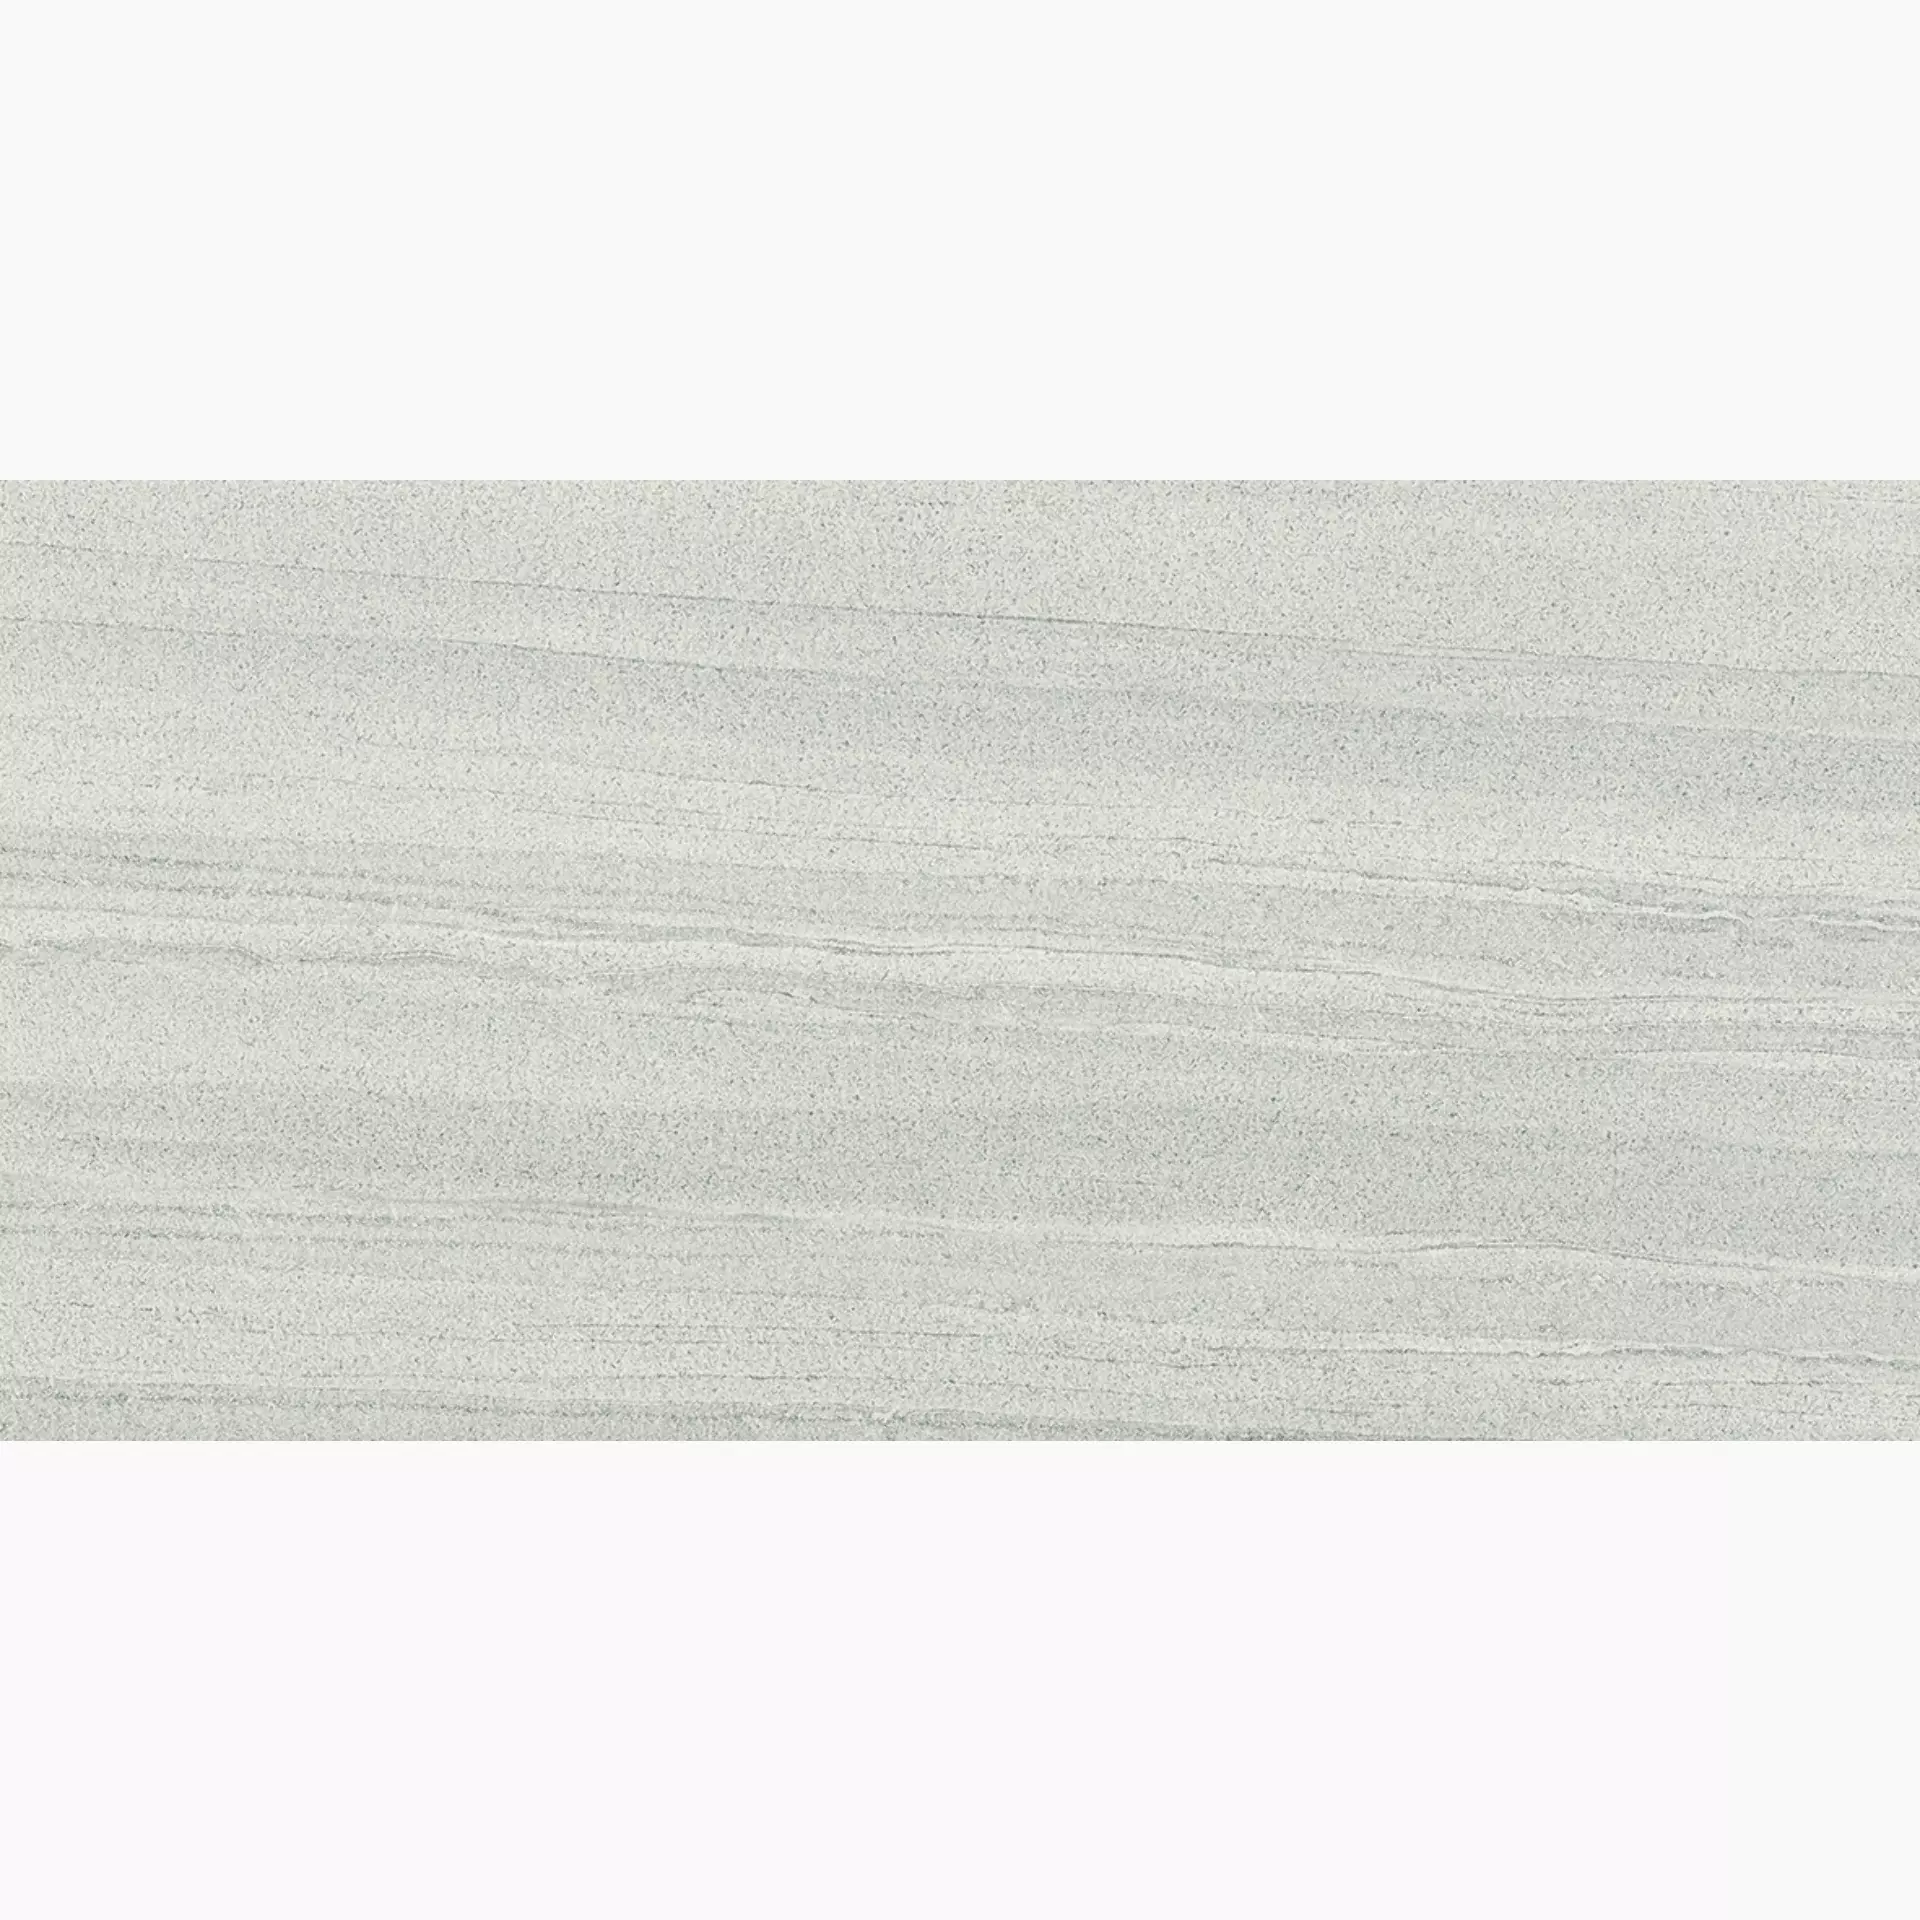 Provenza Evo-Q Light Grey Naturale Light Grey E3V4 natur 30x60cm rektifiziert 9,5mm